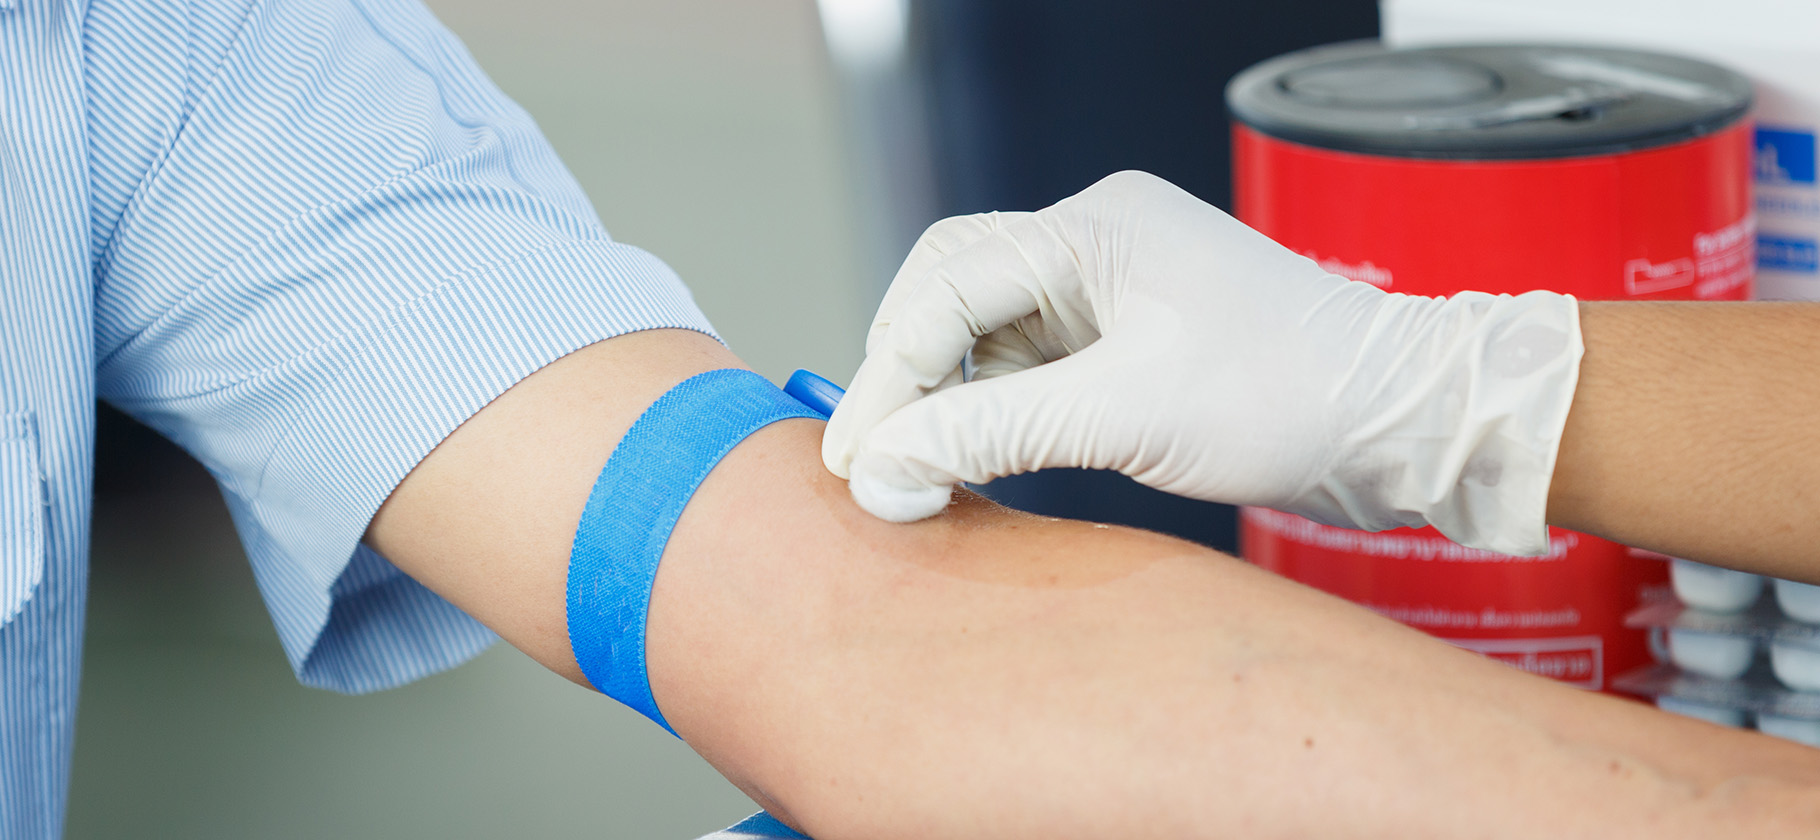 7 мифов о донорстве крови